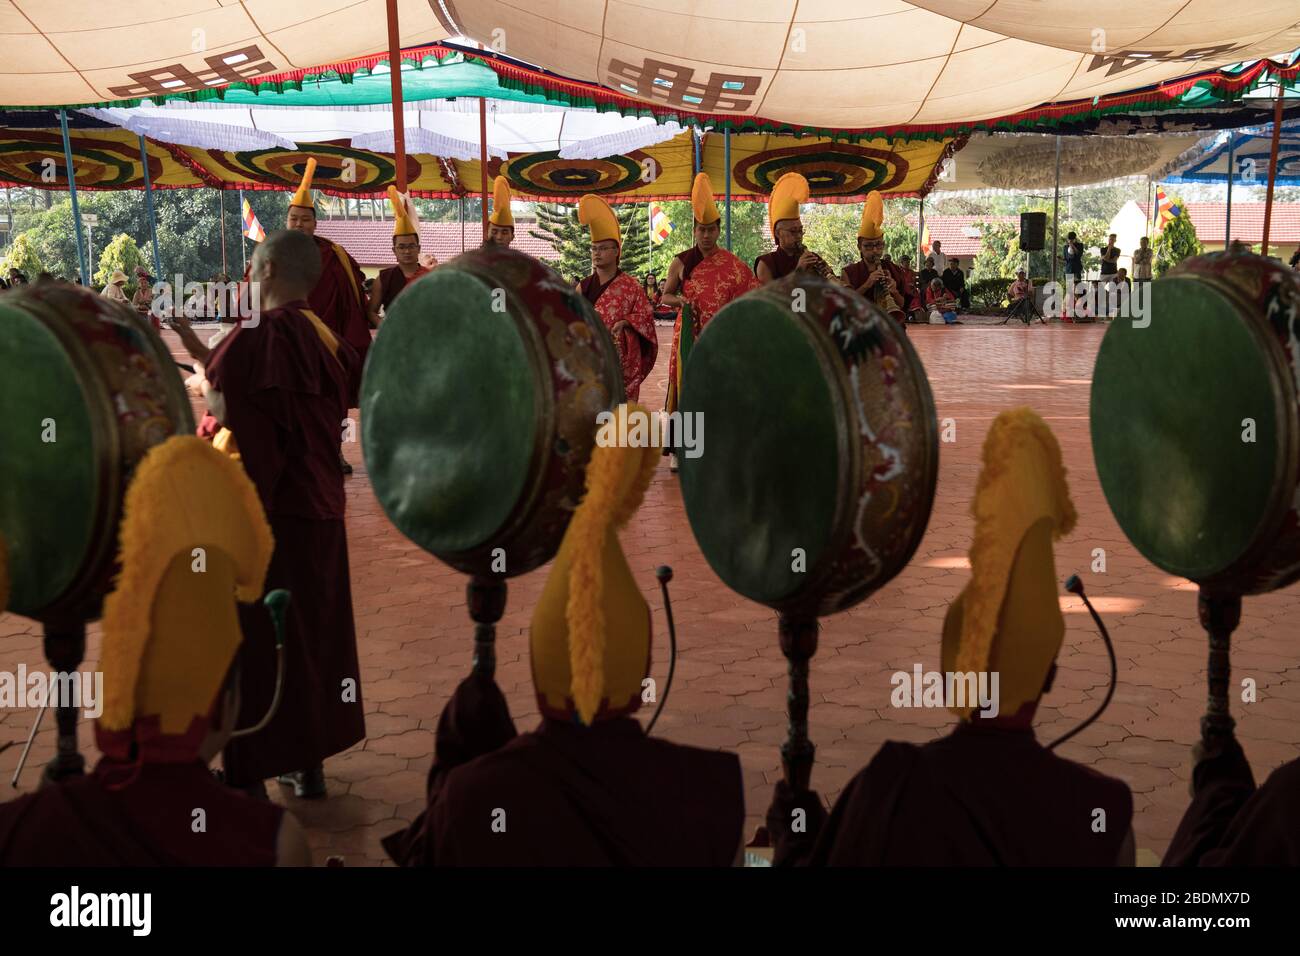 Cham-Tanz, der von tibetischen Mönchen während des Losar (Tibetisches Neujahr) in Gurupura tibetische Siedlung, Karnataka, Südindien, aufgeführt wird. Stockfoto